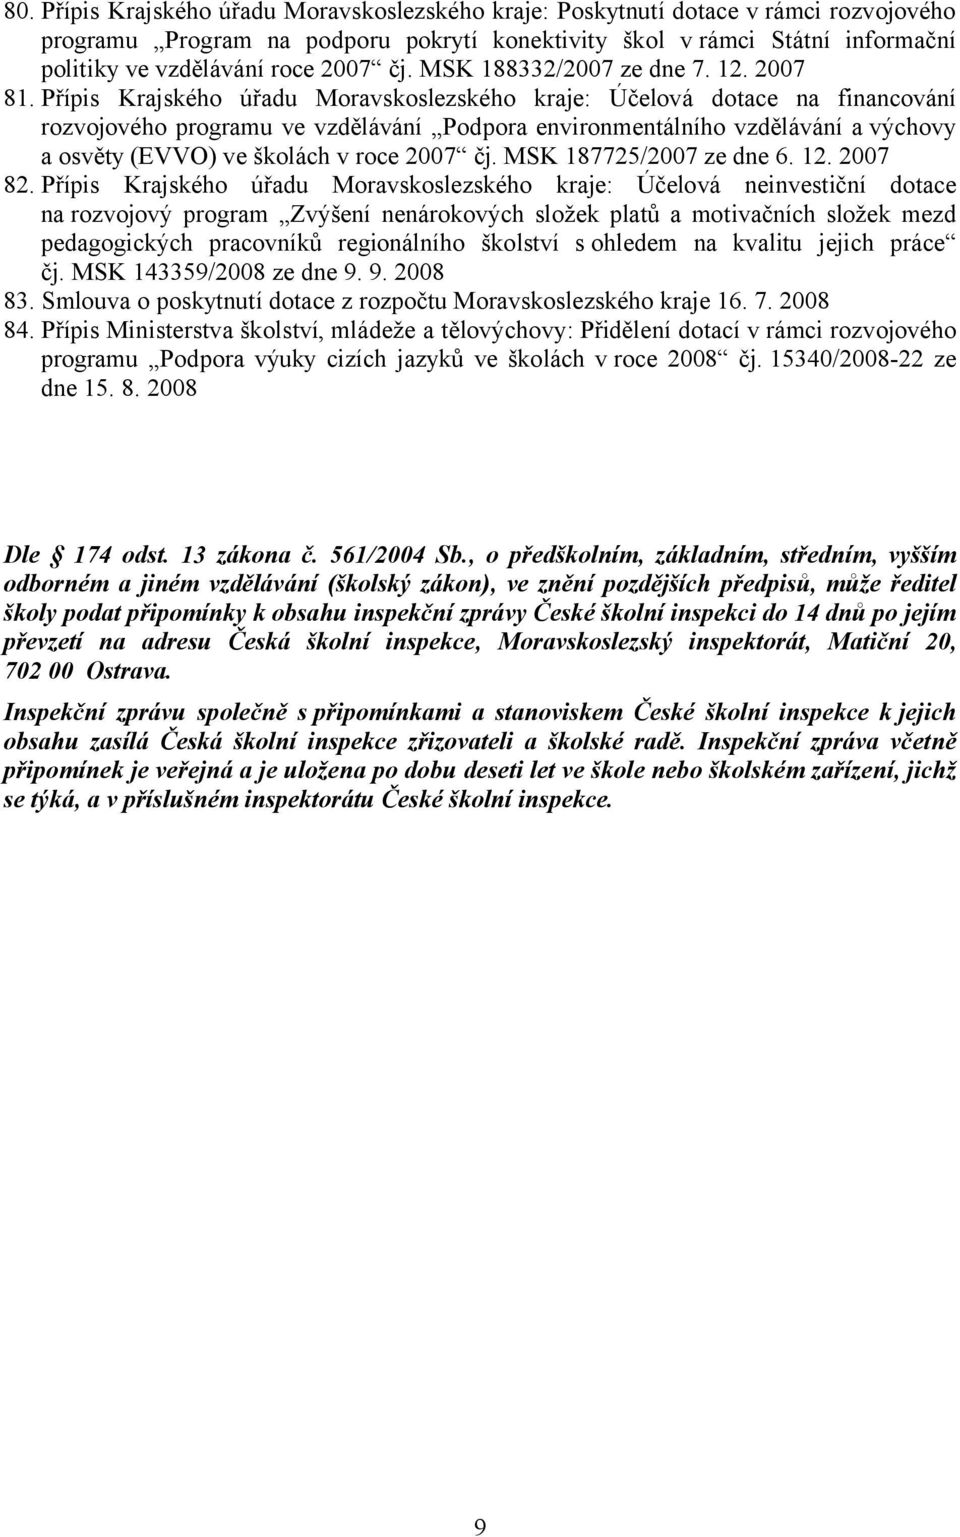 Přípis Krajského úřadu Moravskoslezského kraje: Účelová dotace na financování rozvojového programu ve vzdělávání Podpora environmentálního vzdělávání a výchovy a osvěty (EVVO) ve školách v roce 2007